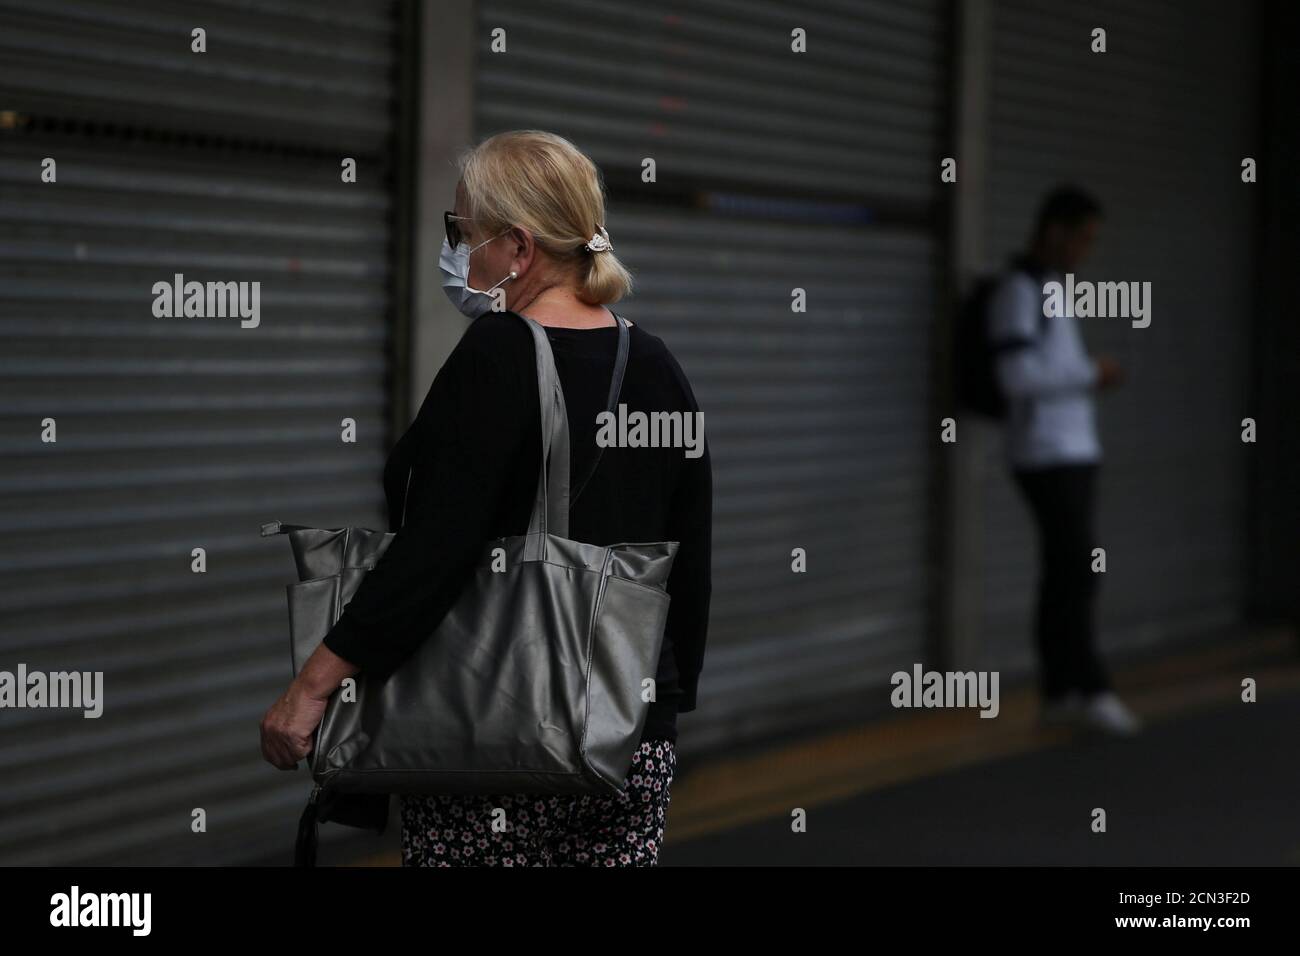 Una mujer que lleva una máscara se encuentra frente a un centro comercial cerrado que redujo sus horas de apertura en medio del brote de la enfermedad del coronavirus (COVID-19) en Sao Paulo, Brasil 19 de marzo de 2020. REUTERS/Rahel Patrasso Foto de stock